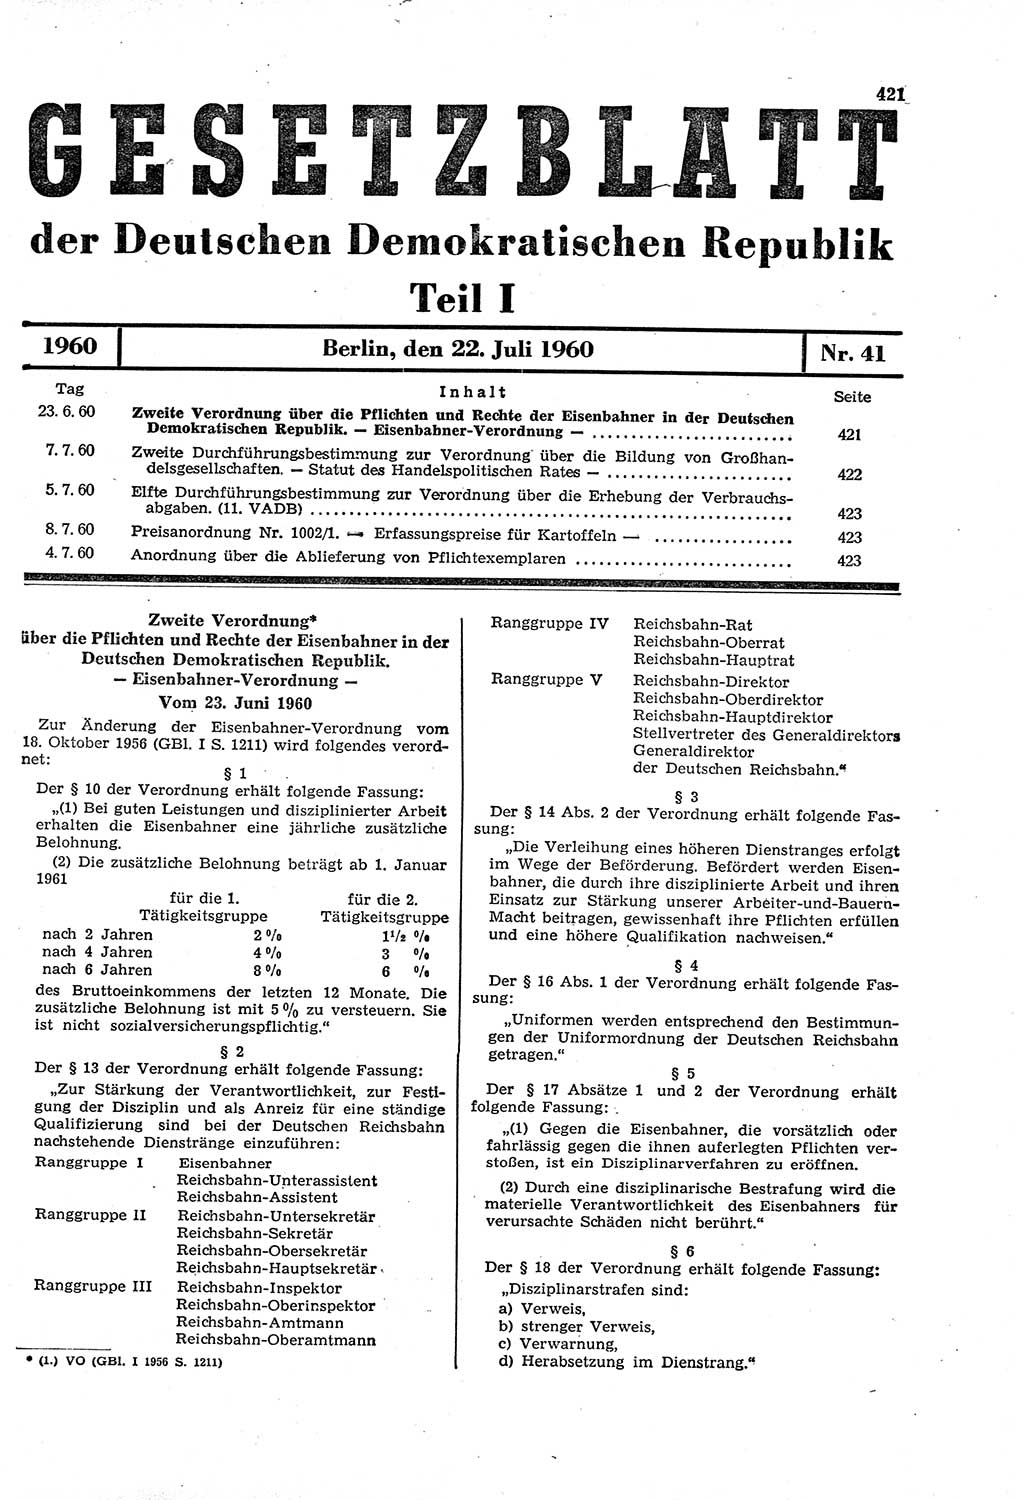 Gesetzblatt (GBl.) der Deutschen Demokratischen Republik (DDR) Teil Ⅰ 1960, Seite 421 (GBl. DDR Ⅰ 1960, S. 421)